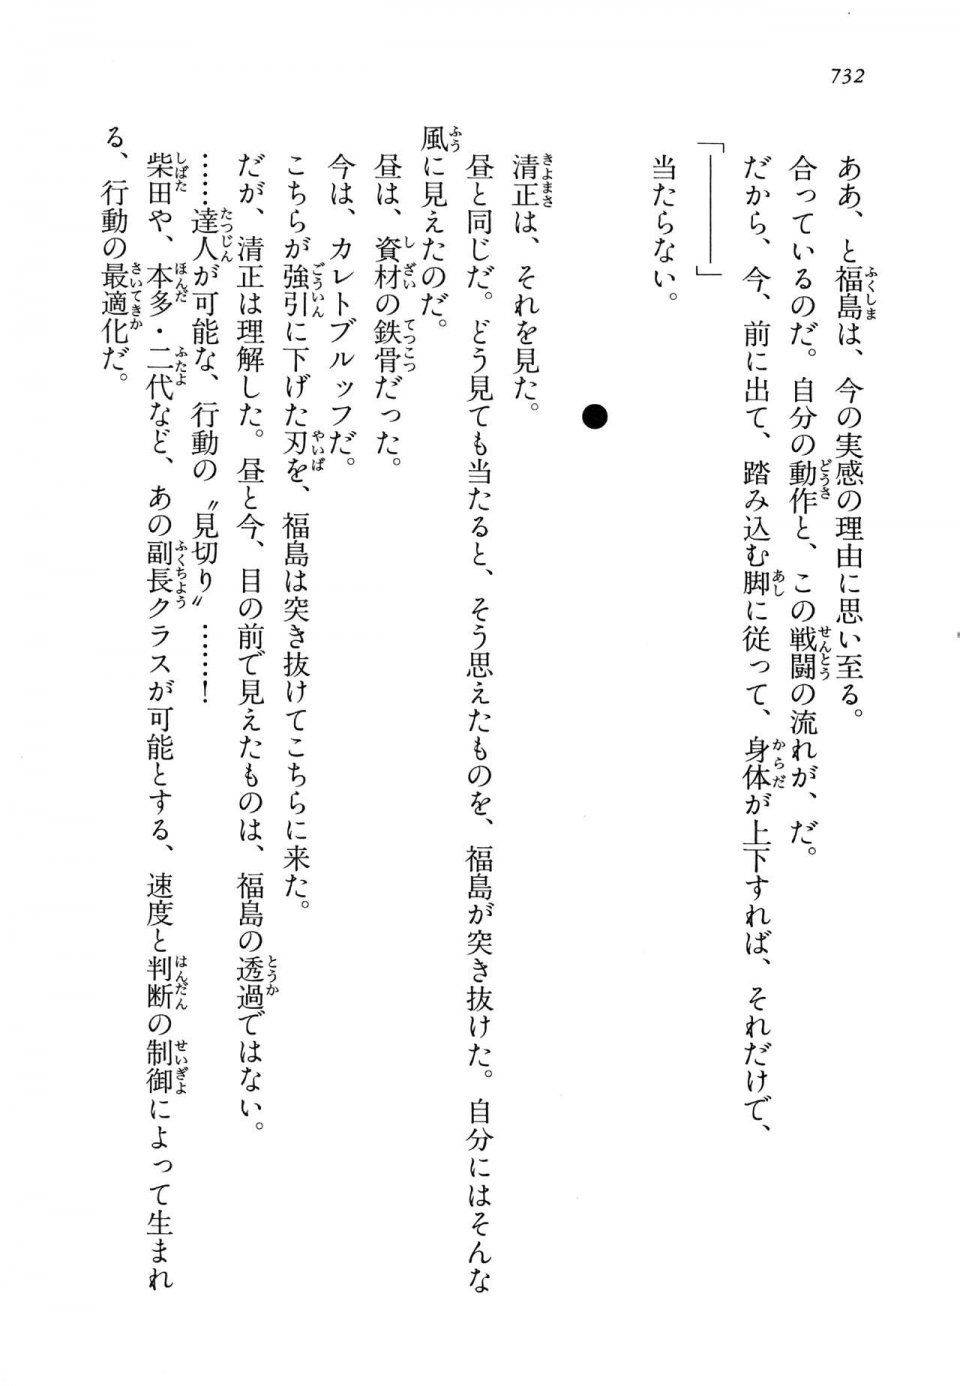 Kyoukai Senjou no Horizon LN Vol 14(6B) - Photo #732